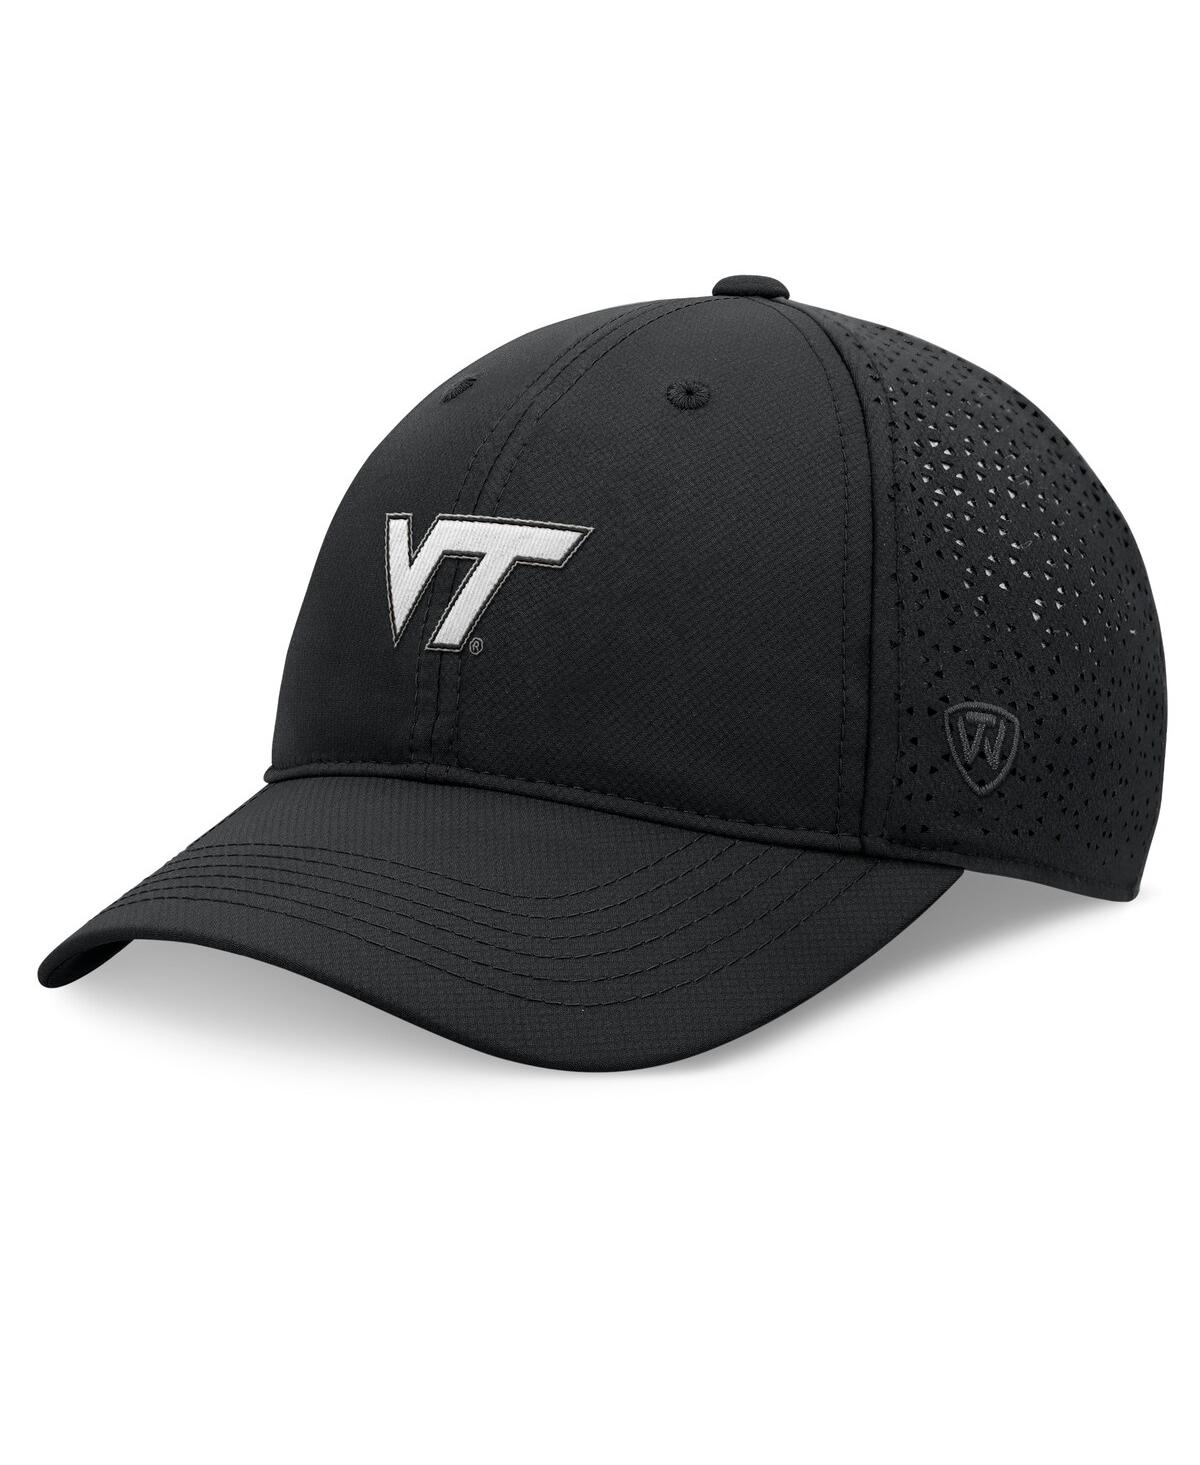 Shop Top Of The World Men's Black Virginia Tech Hokies Liquesce Trucker Adjustable Hat